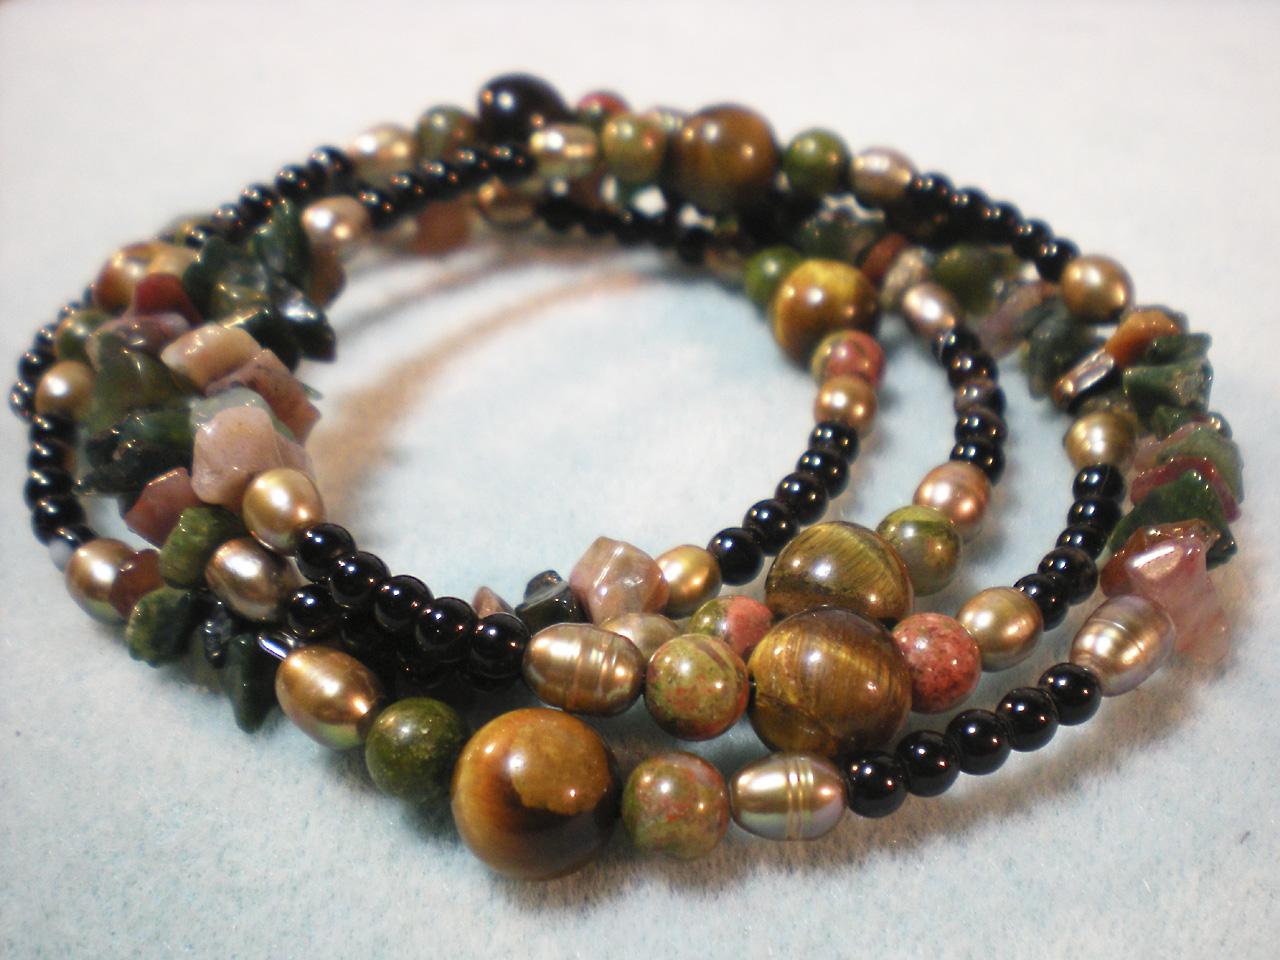 Art Bead Scene Blog: Memory Wire Cuff Bracelets - Free Project